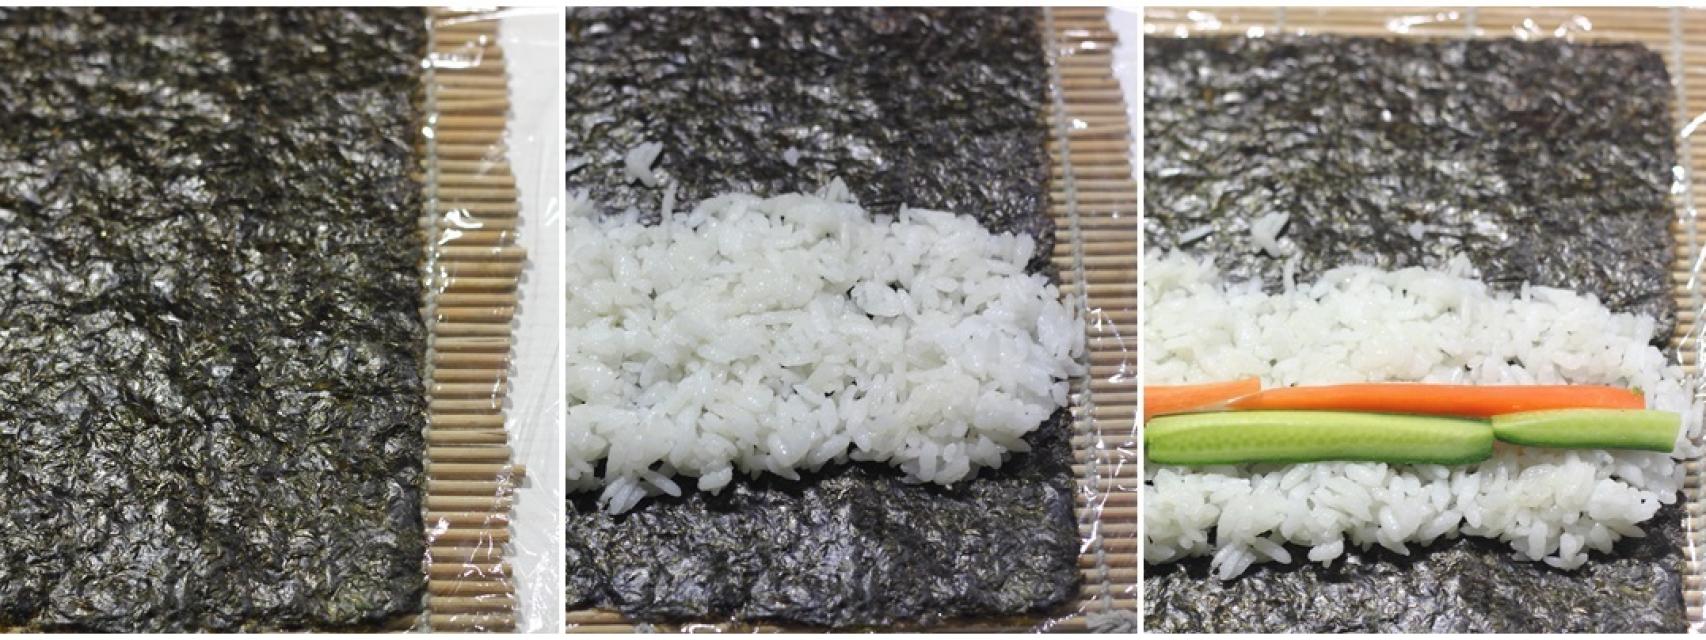 Sushi fácil en 5 pasos, cómo hacer sushi casero - Pequerecetas